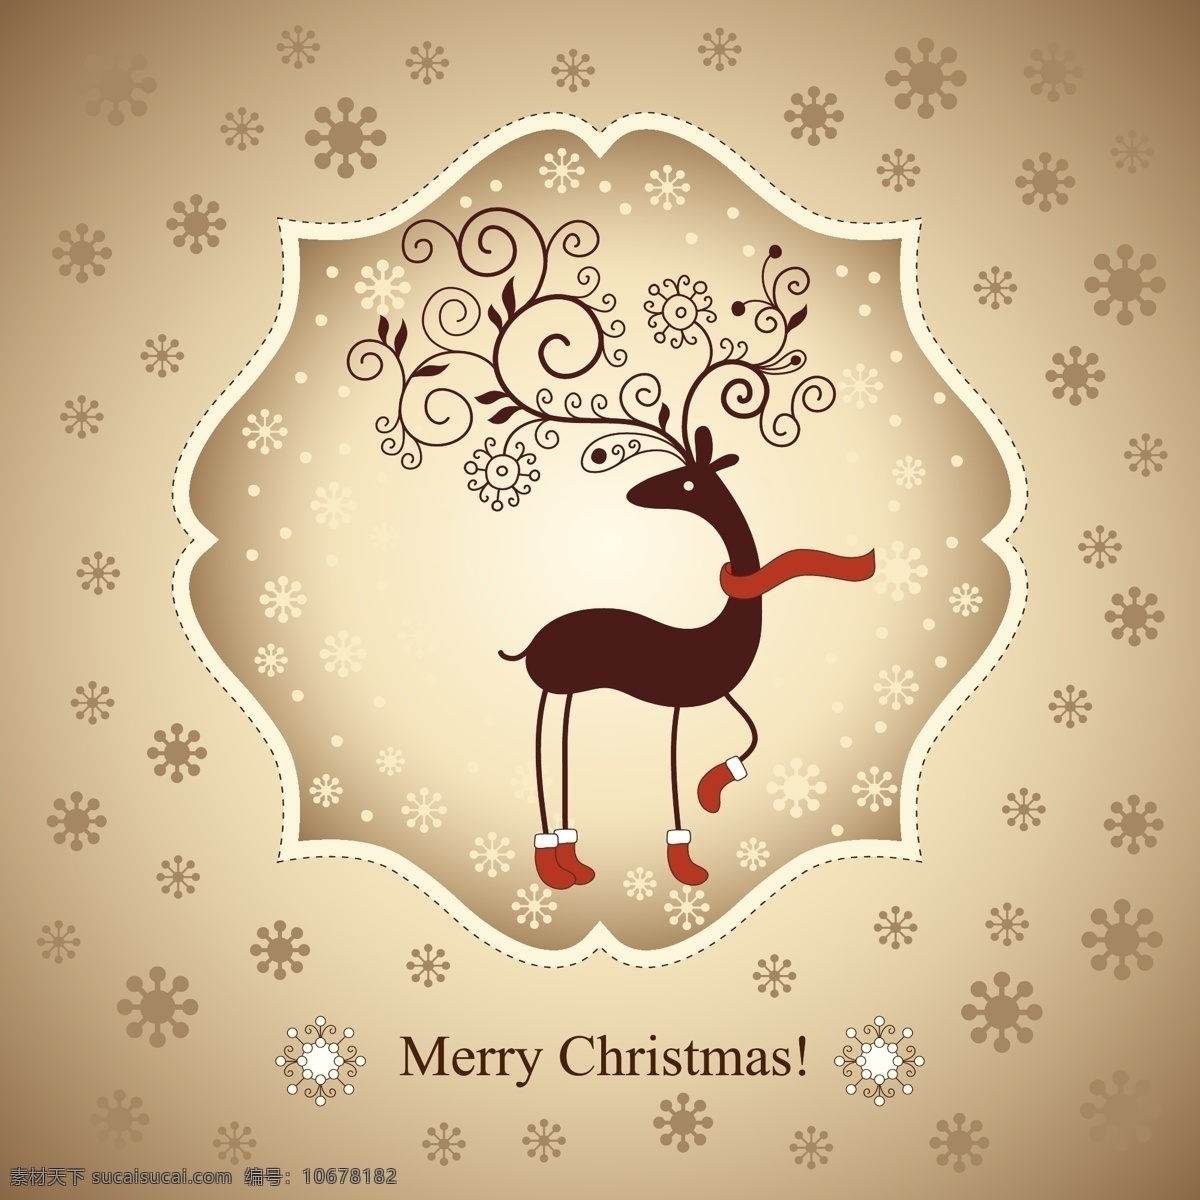 可爱 圣诞 驯鹿 矢量 麋鹿 圣诞节 雪花 圣诞袜 标签 图标 花纹 节日 贺卡 卡片 庆祝 祝福 卡通 插画 背景 海报 画册 圣诞节素材 生物世界 野生动物